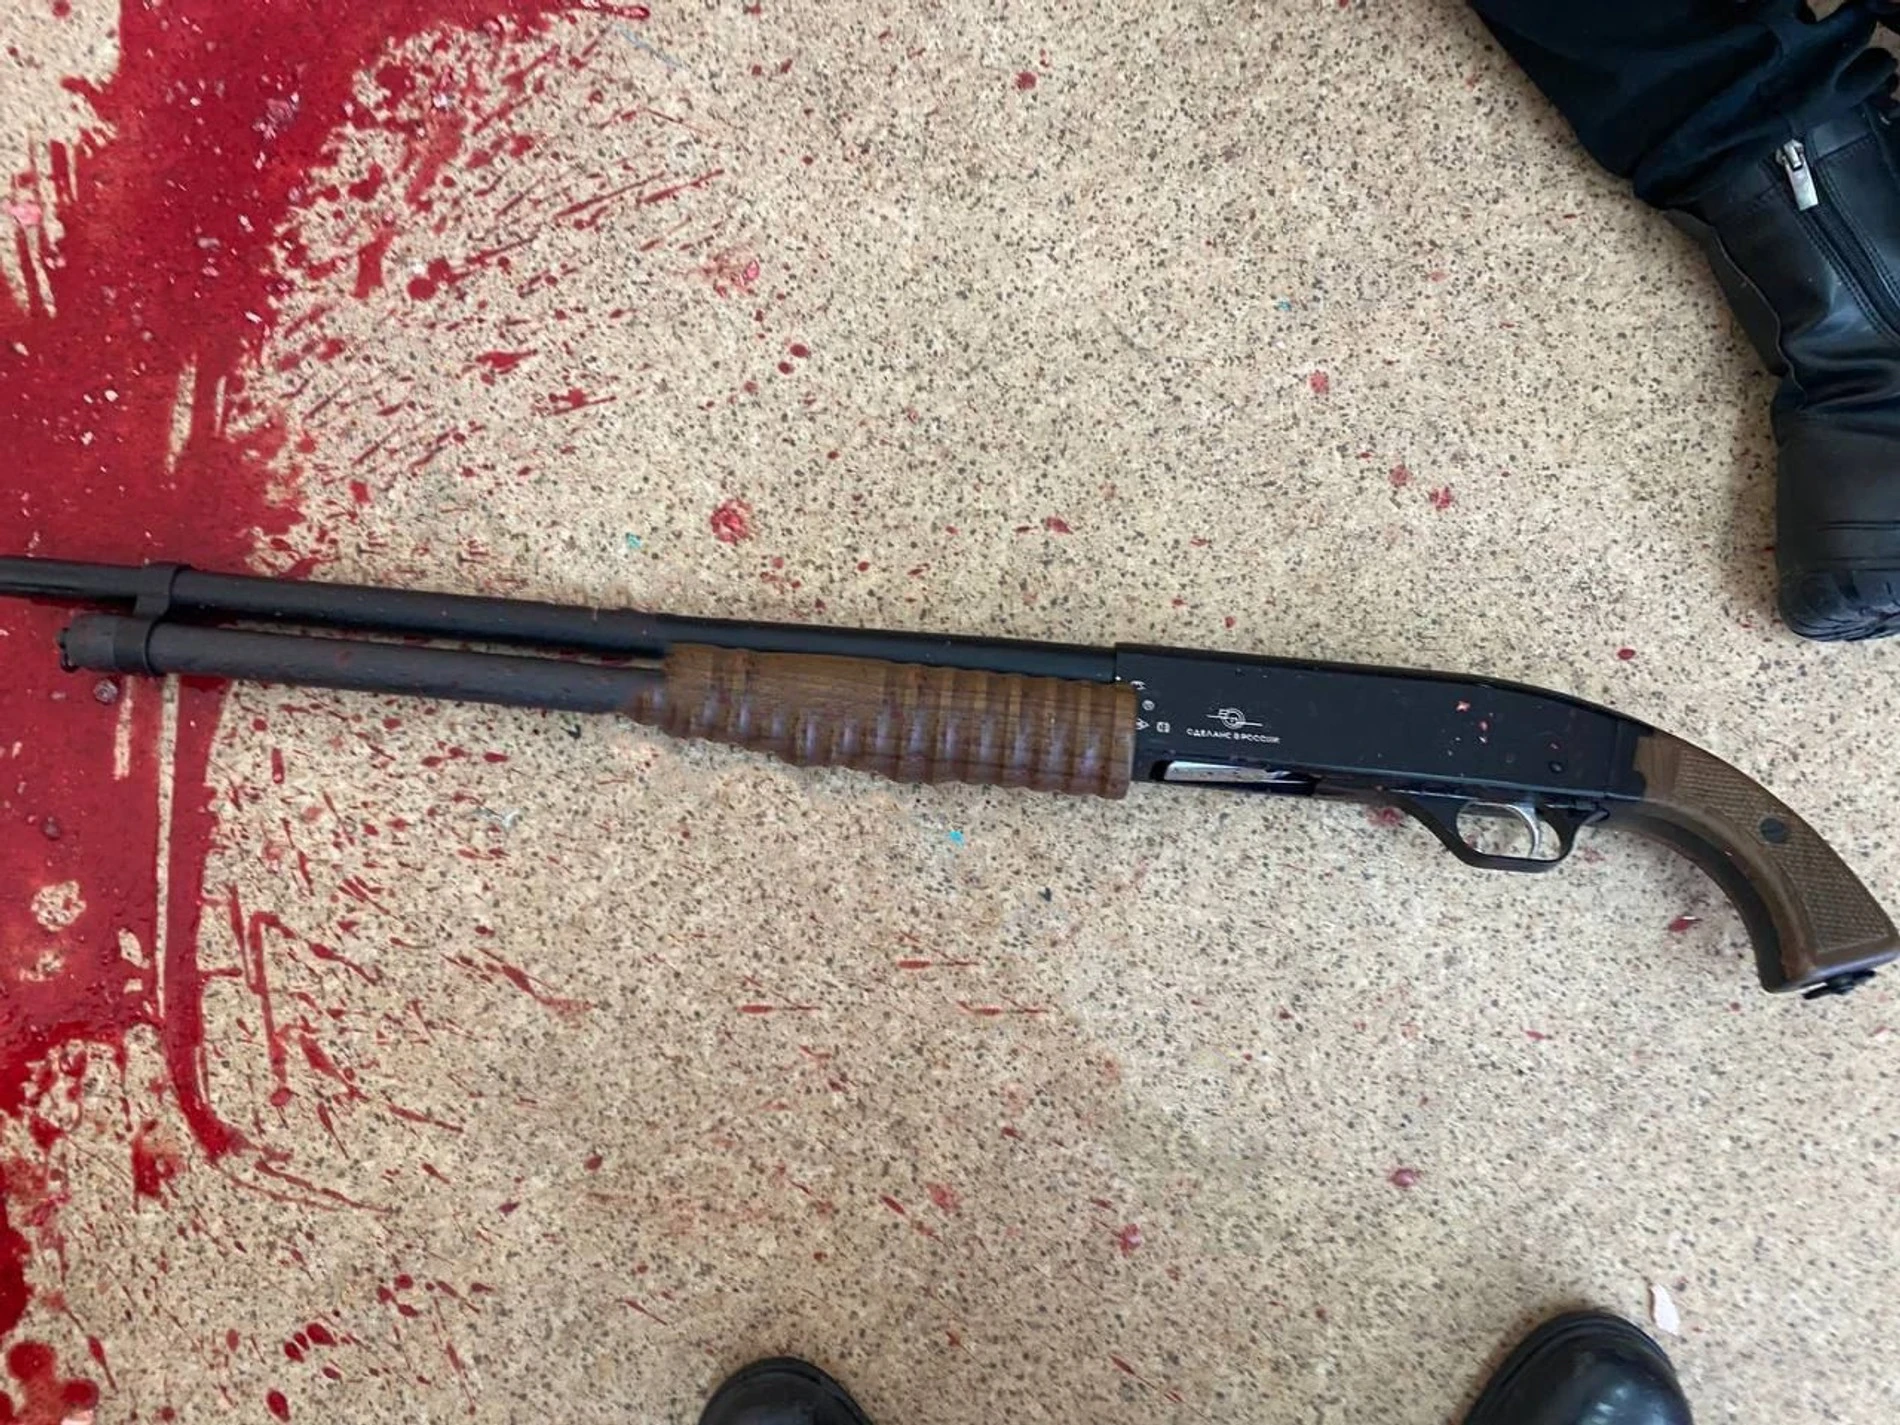 Оружие, из которого, предположительно, стреляла восьмиклассница. Фото: SHOT